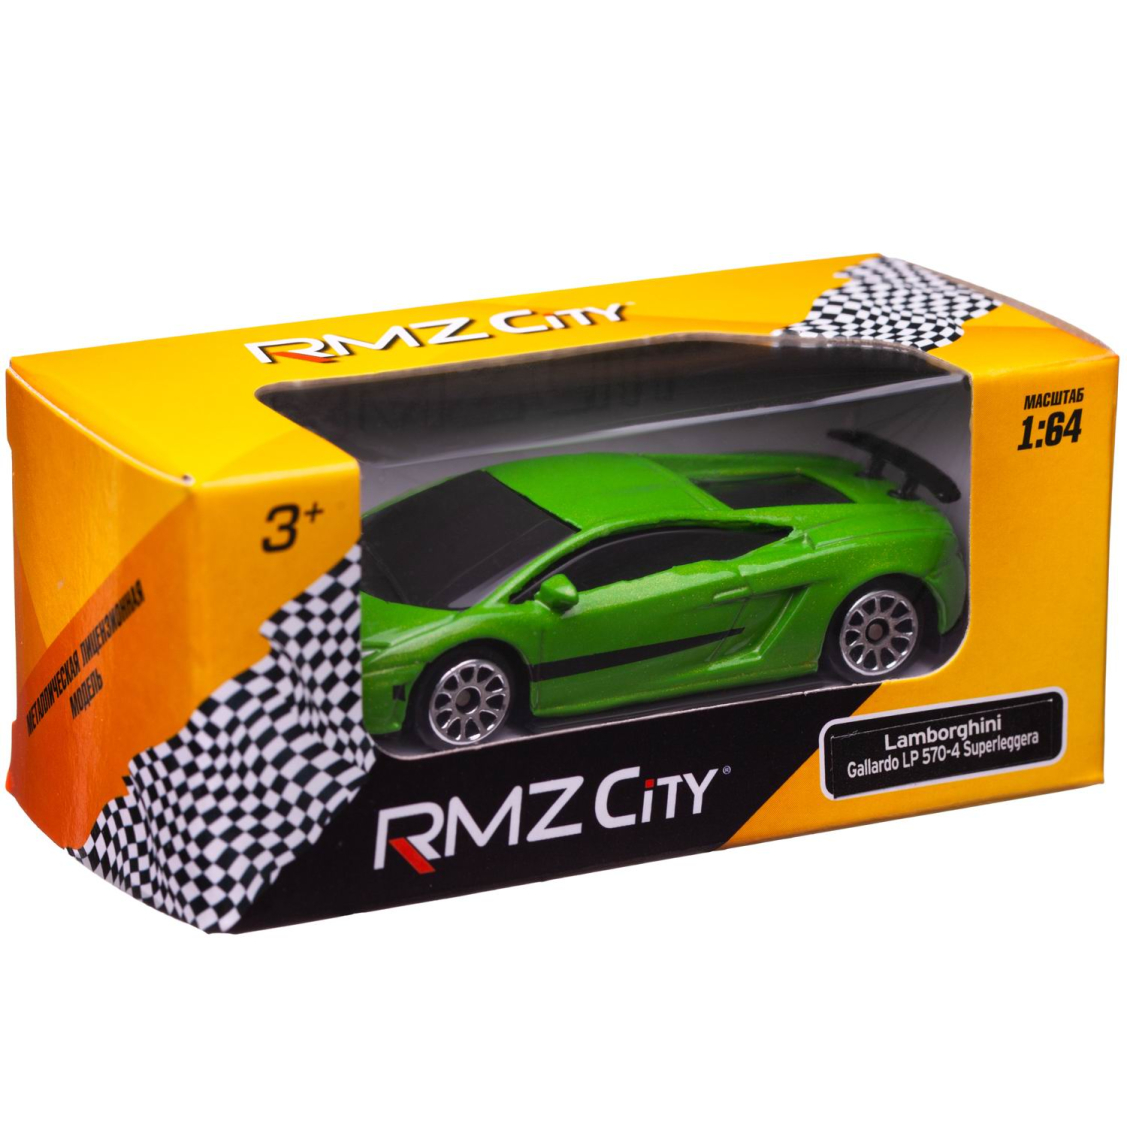 Машинка металлическая Uni-Fortune RMZ City 1:64 Lamborghini Gallardo LP570-4 без механизмов, (зеленый),